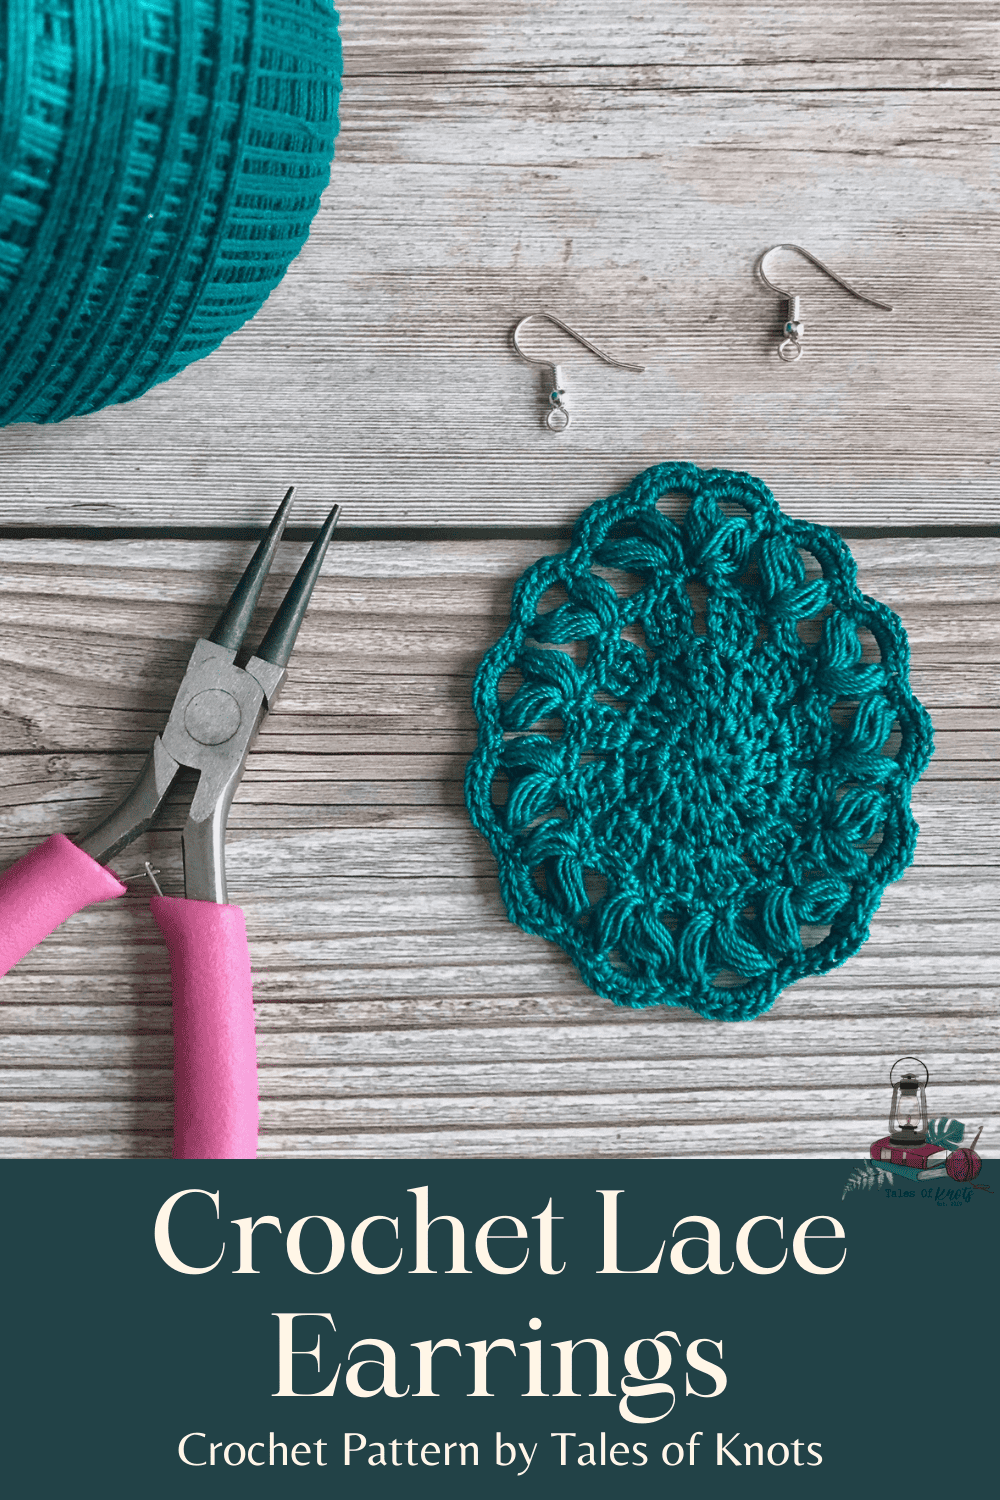 crochet thread earrings made from crochet lace coaster pattern